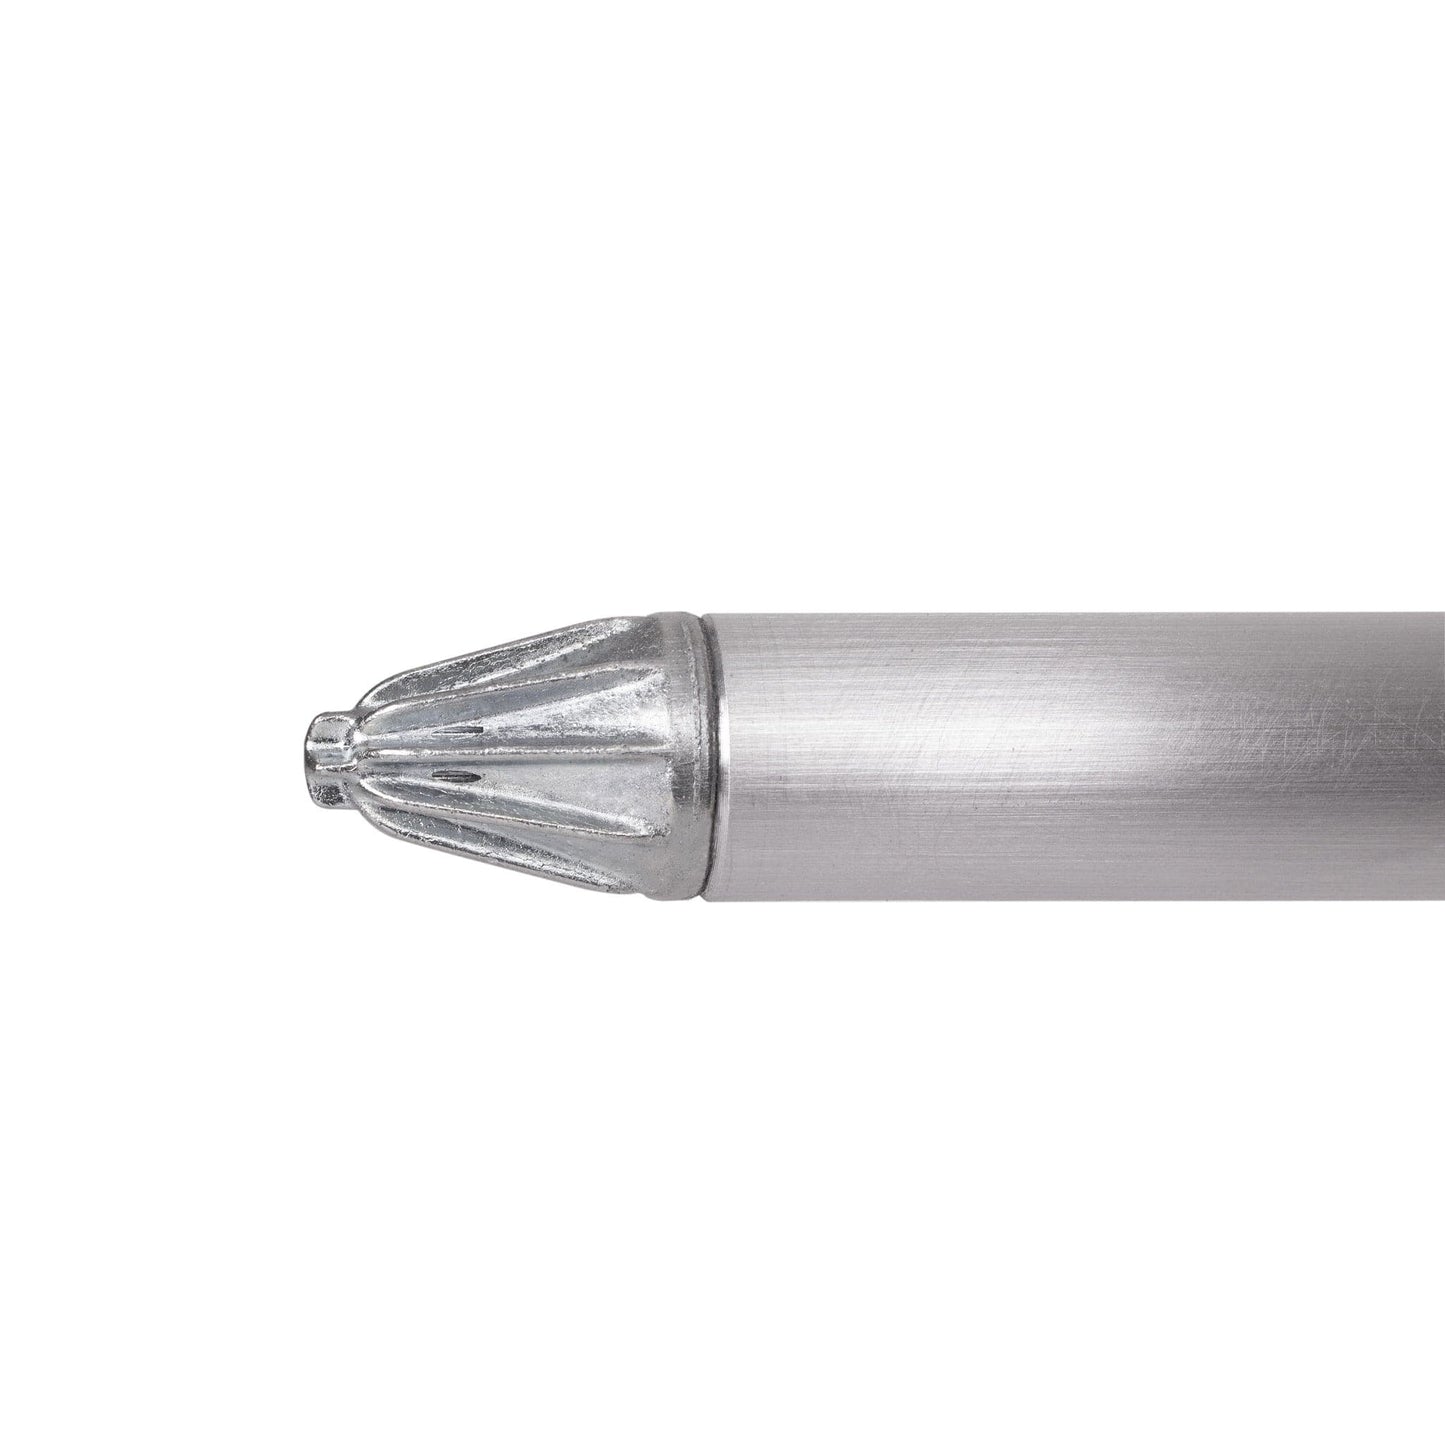 WhisperJet 80LJ Aluminum Extension w/ Aluminum Nozzle - 60"